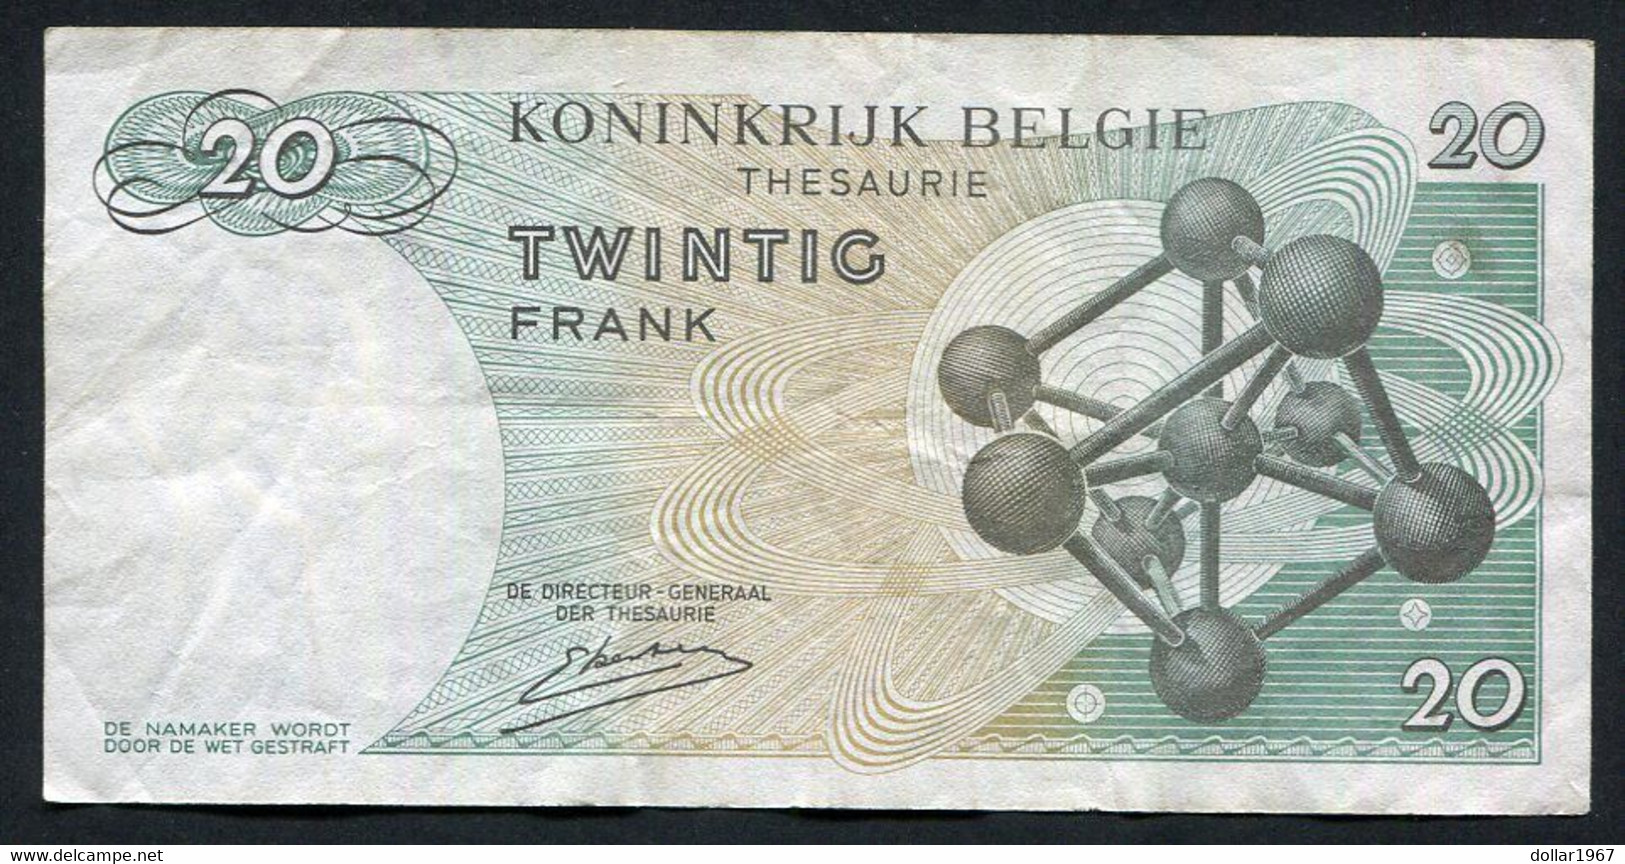 België Belgique Belgium 15 06 1964 -  20 Francs Atomium Baudouin. 4 A 5407499 - 20 Franchi